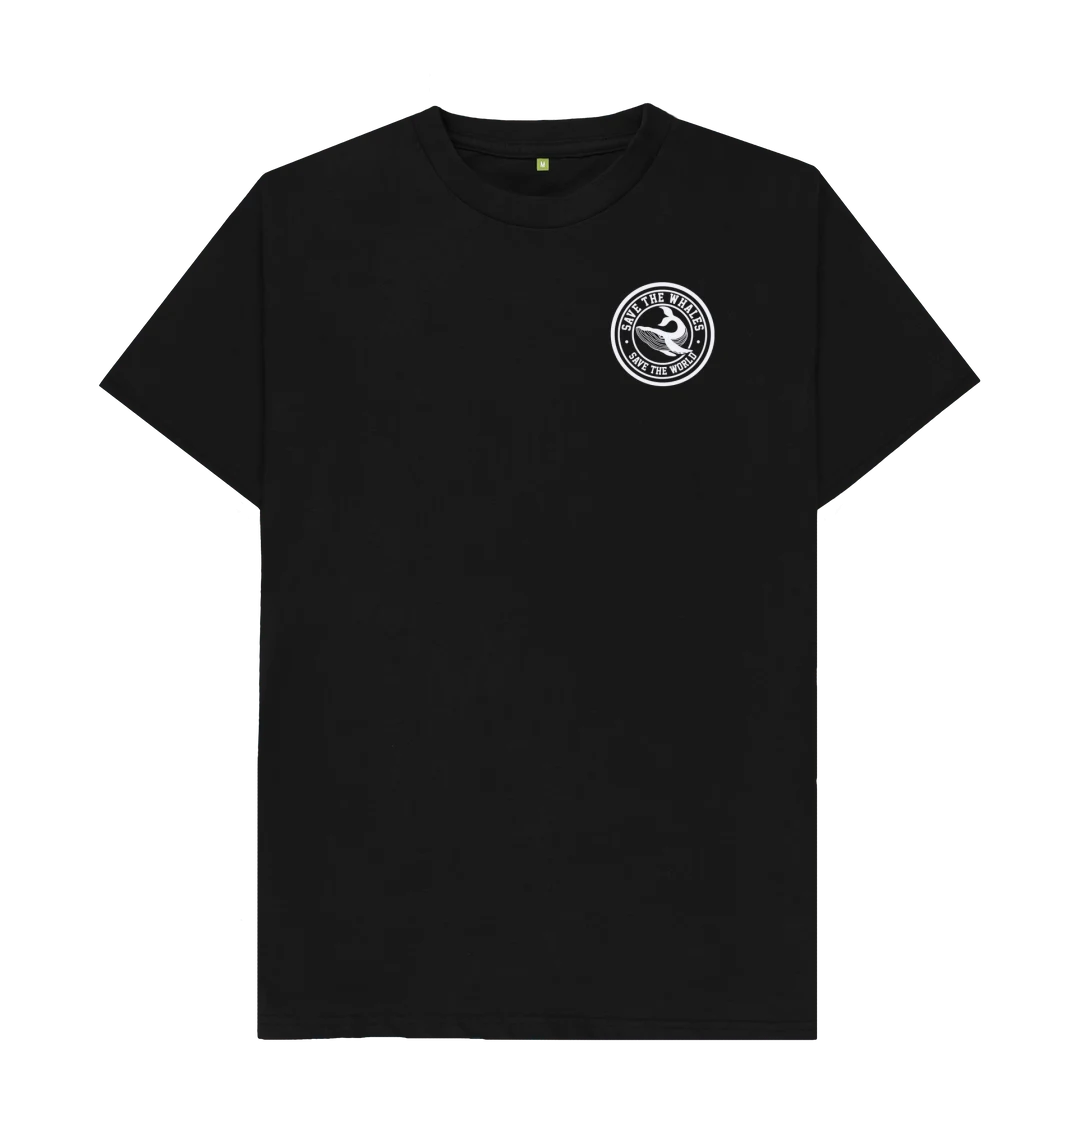 Whale T-shirt black & white